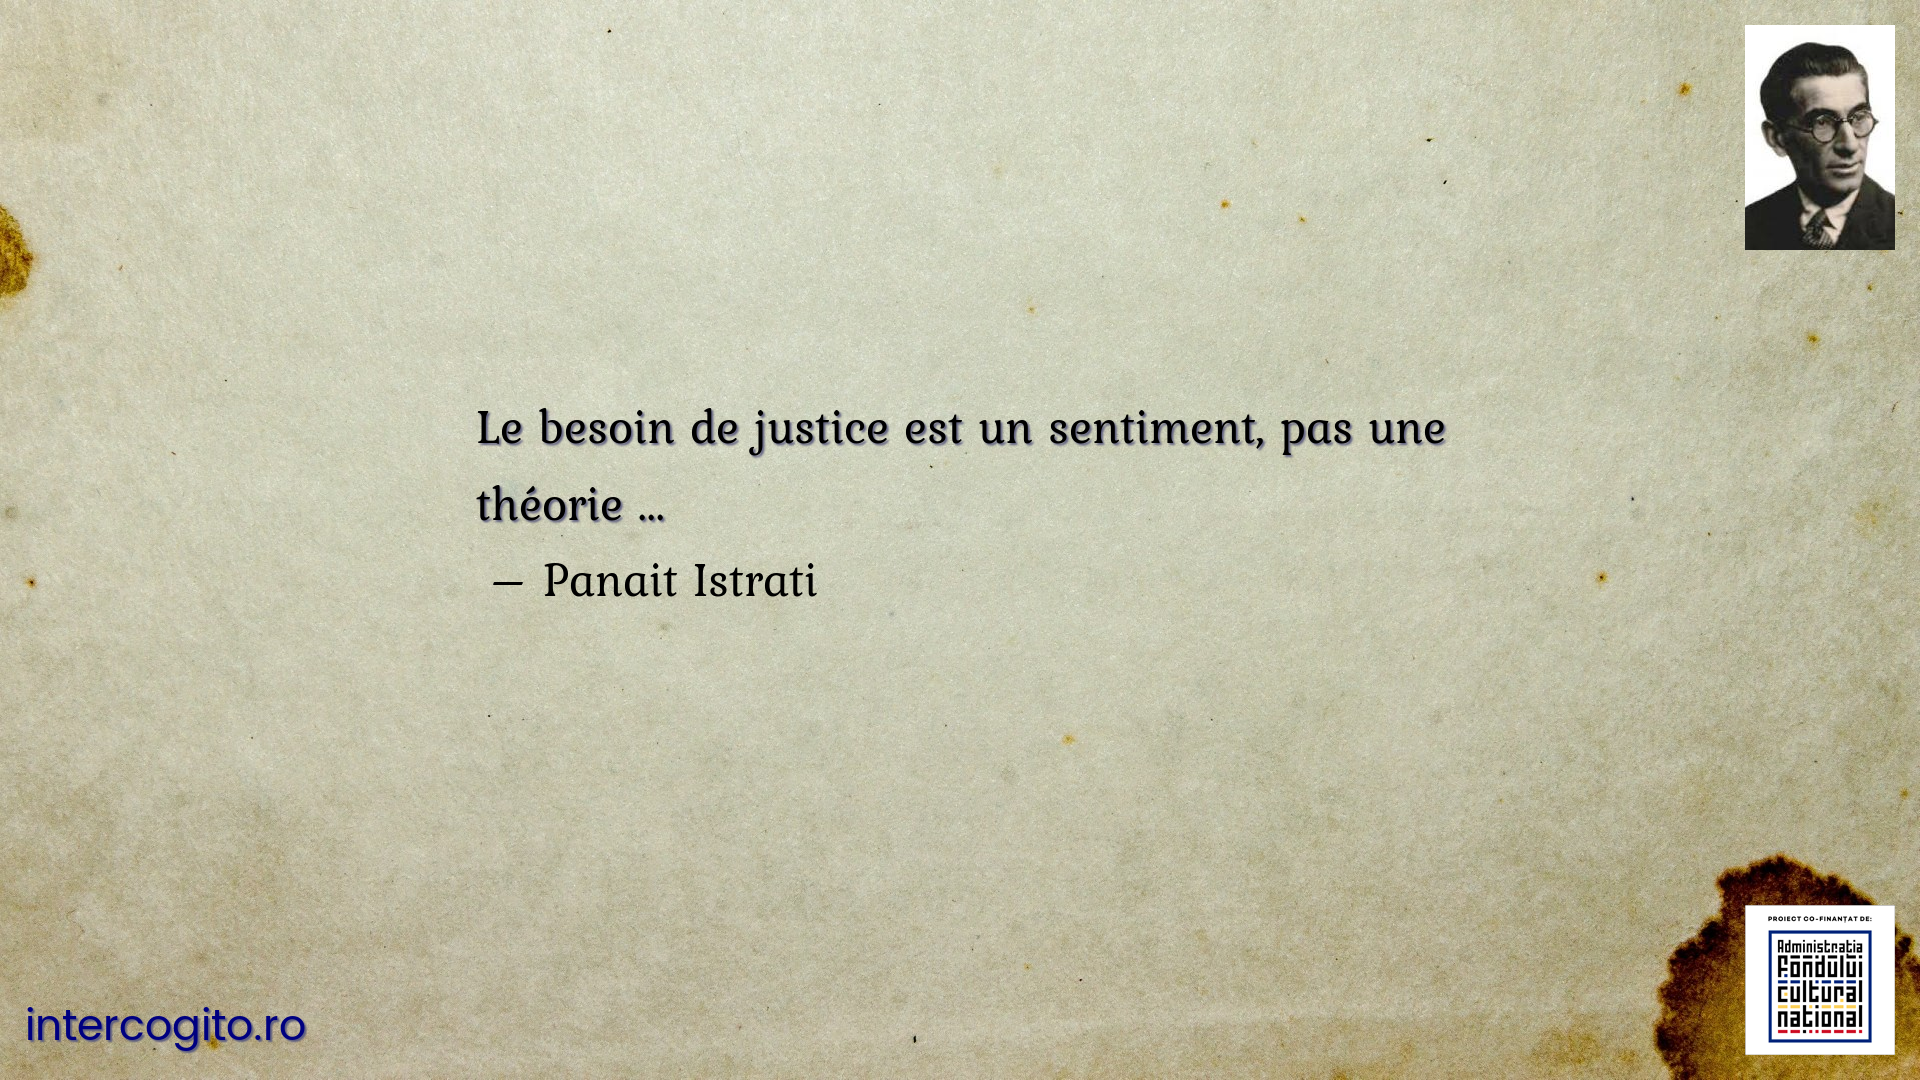 Le besoin de justice est un sentiment, pas une théorie ...